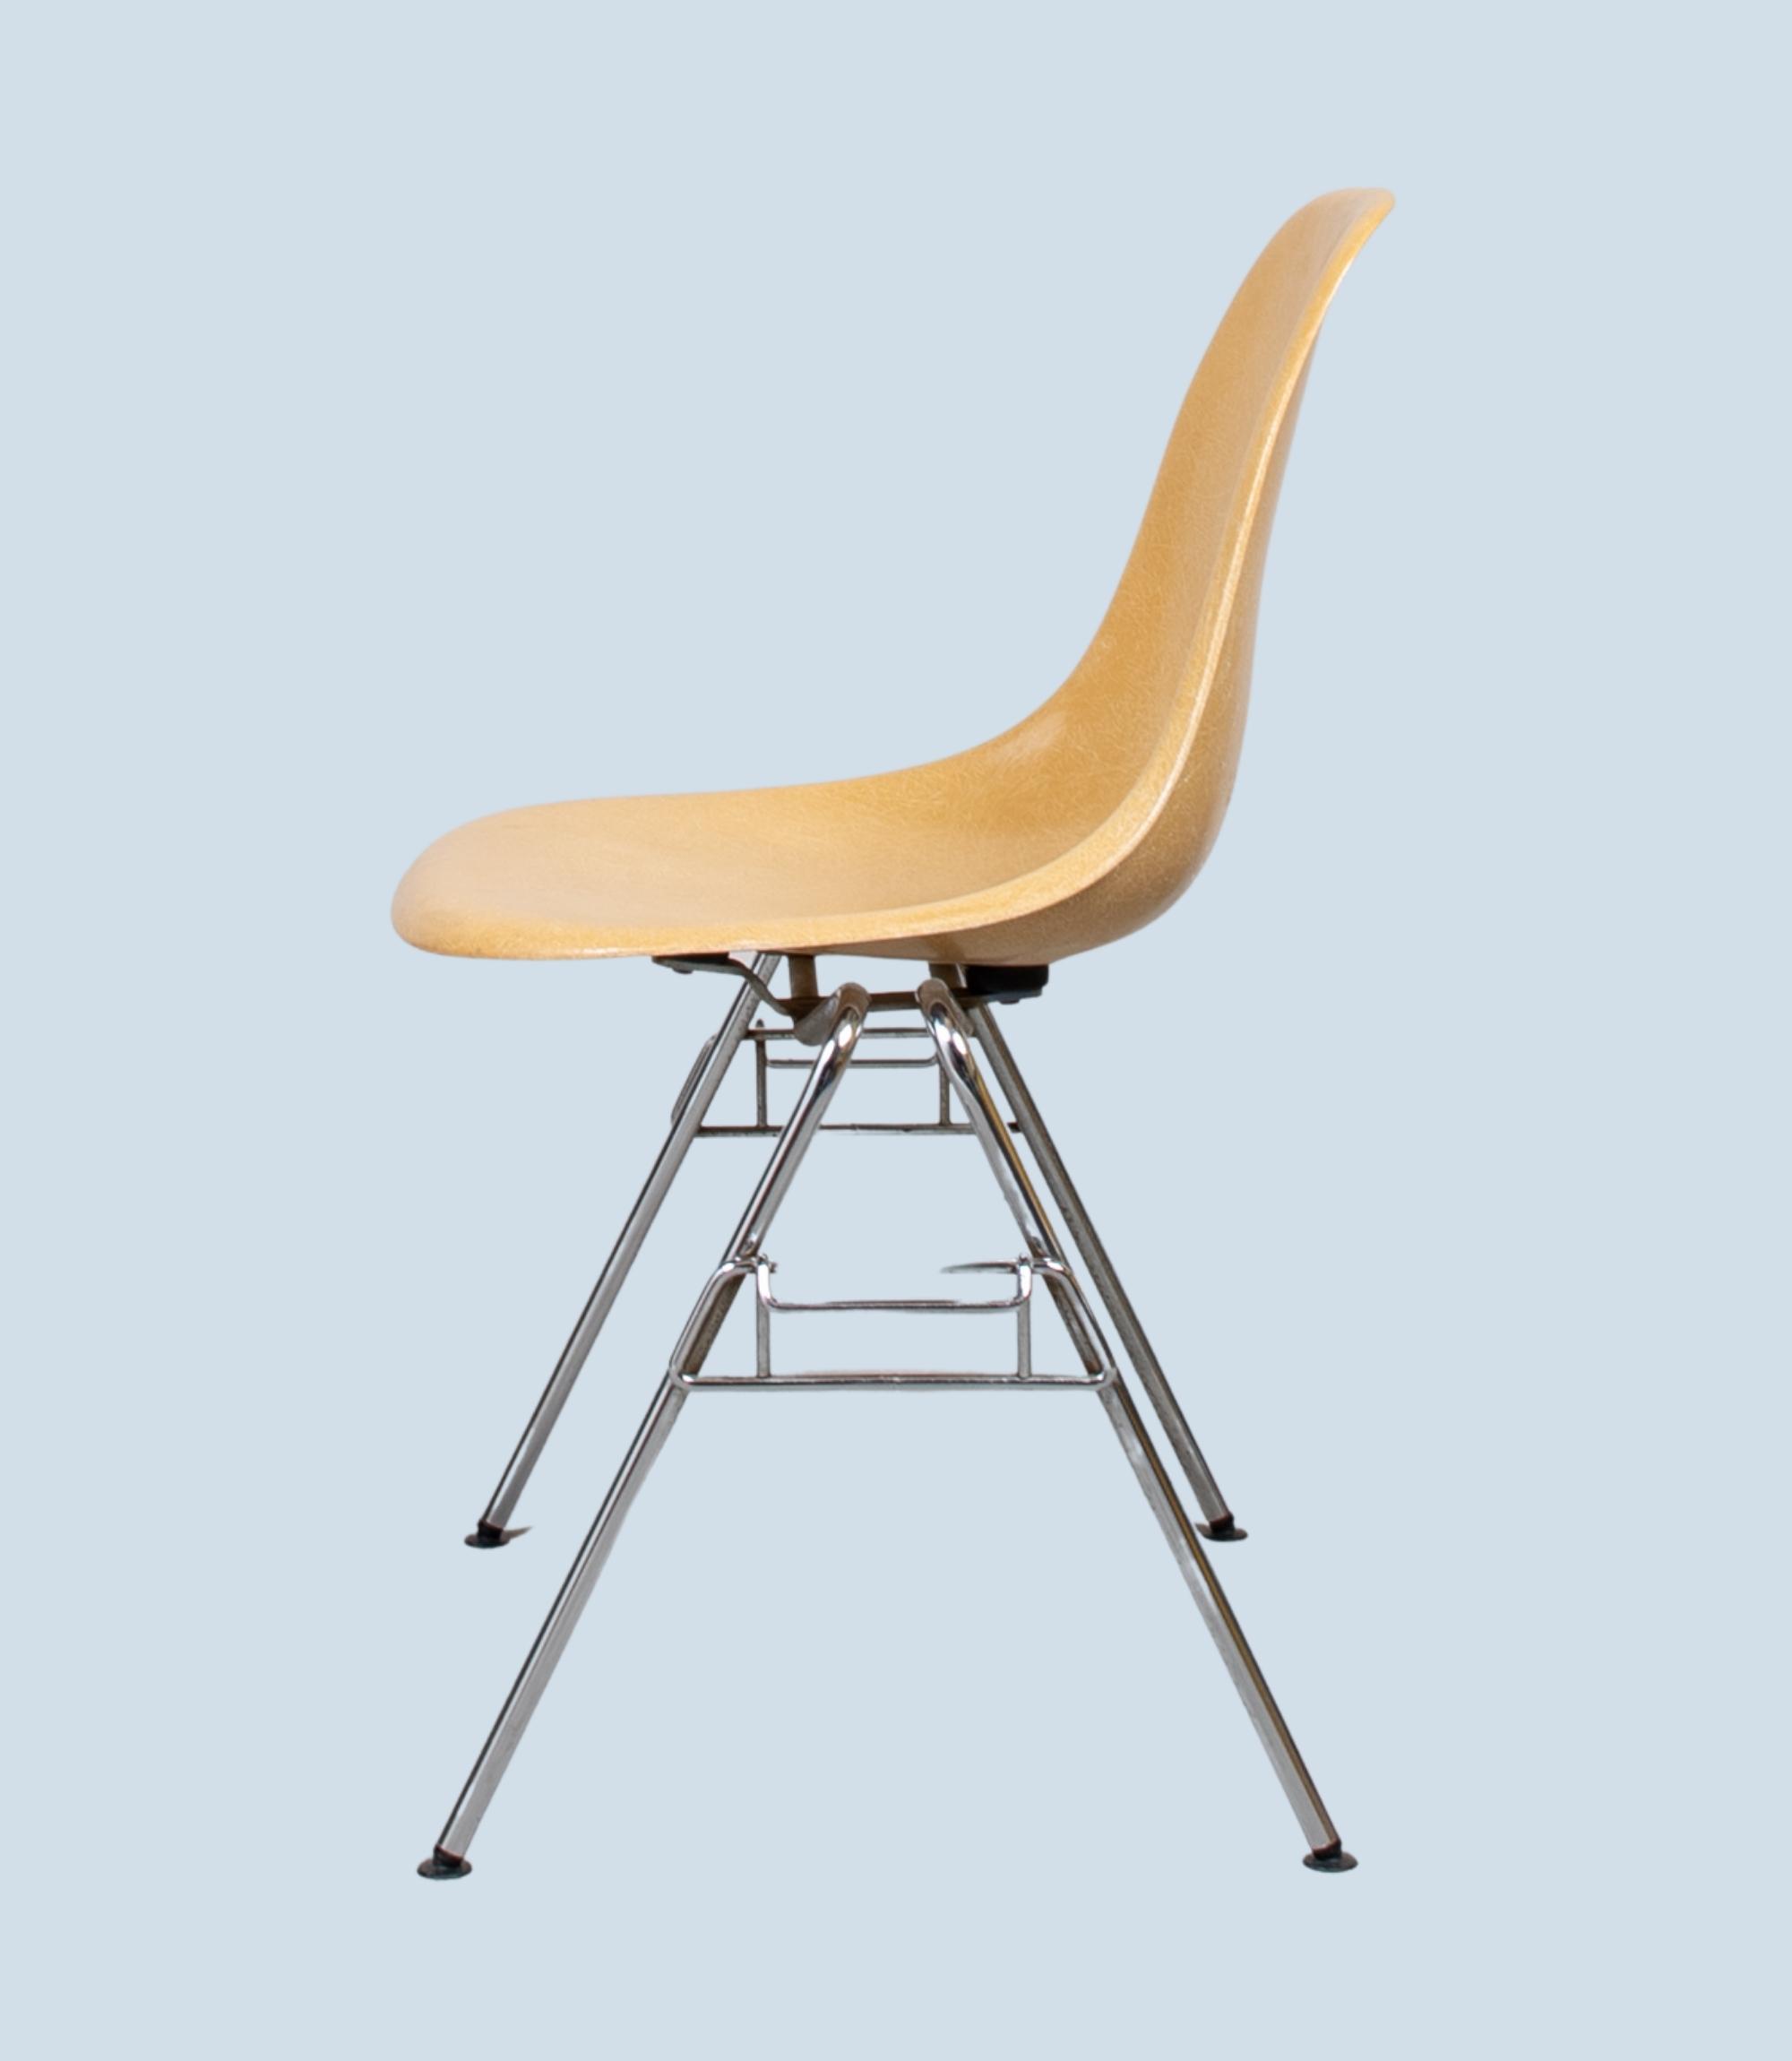 Eames Fiberglass Side Chair by Herman Miller Ochre Light